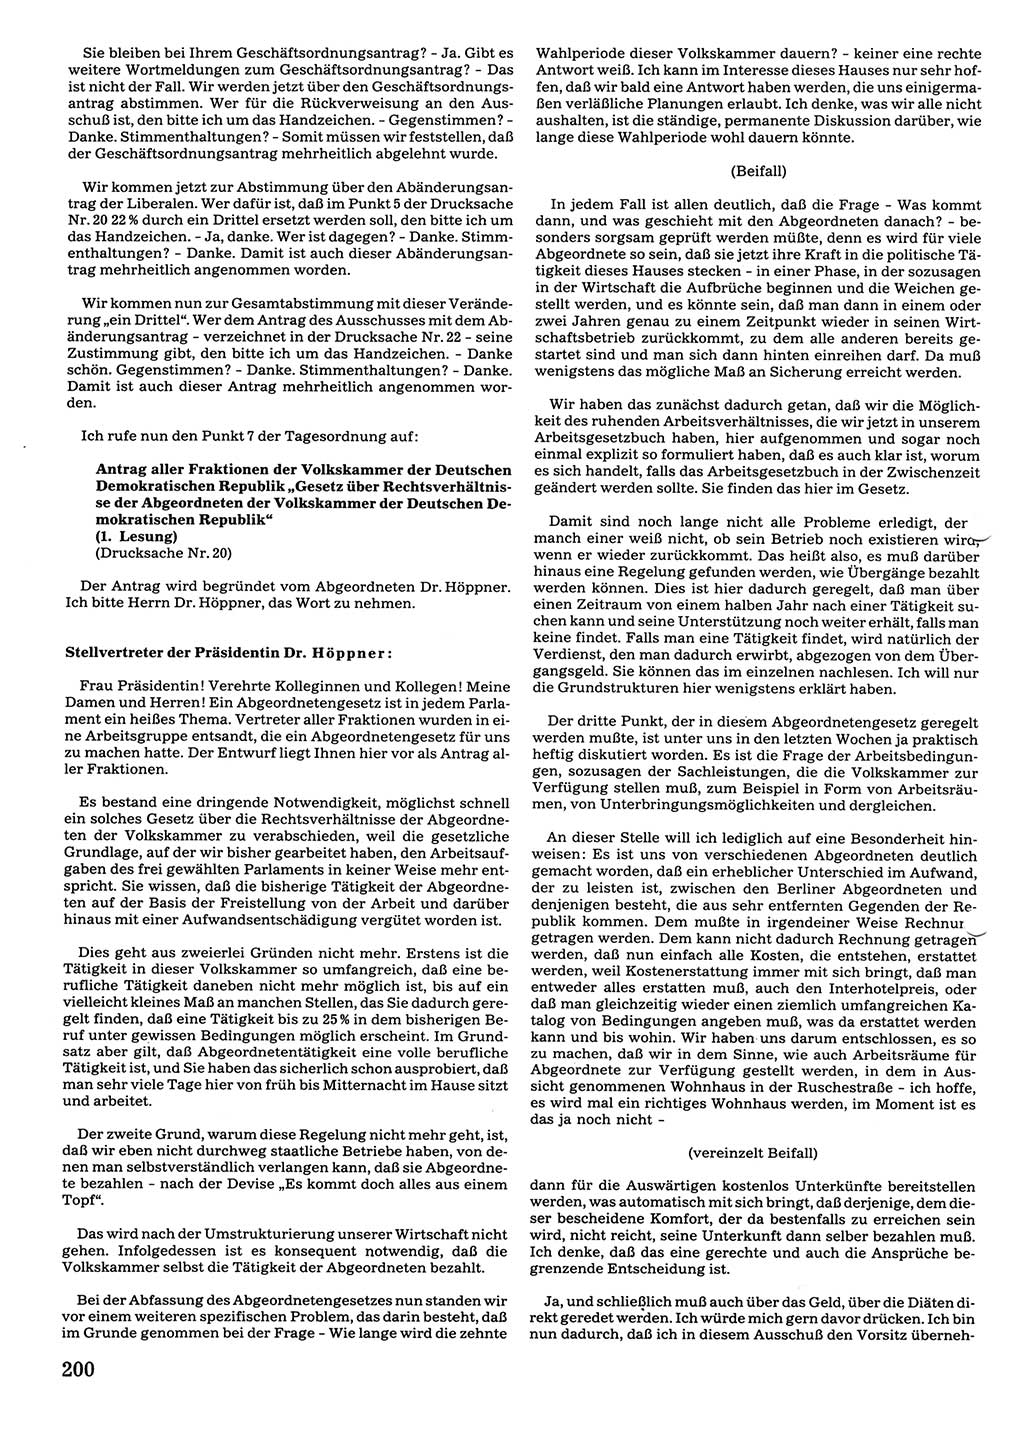 Tagungen der Volkskammer (VK) der Deutschen Demokratischen Republik (DDR), 10. Wahlperiode 1990, Seite 200 (VK. DDR 10. WP. 1990, Prot. Tg. 1-38, 5.4.-2.10.1990, S. 200)